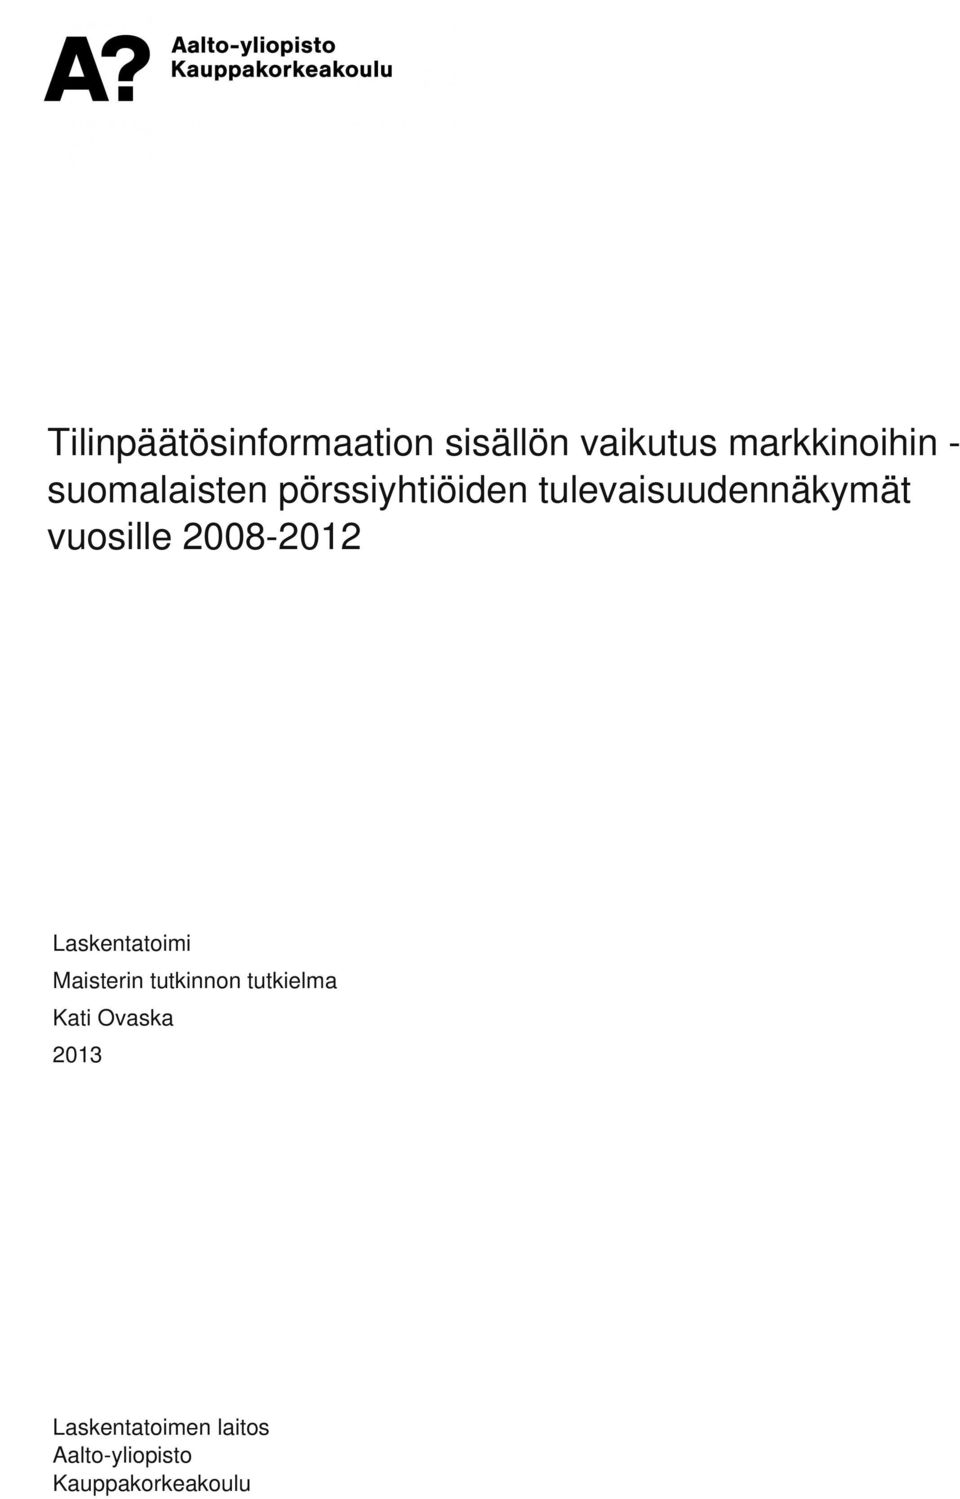 suomalaisten pörssiyhtiöiden tulevaisuudennäkymät vuosille 2008-2012